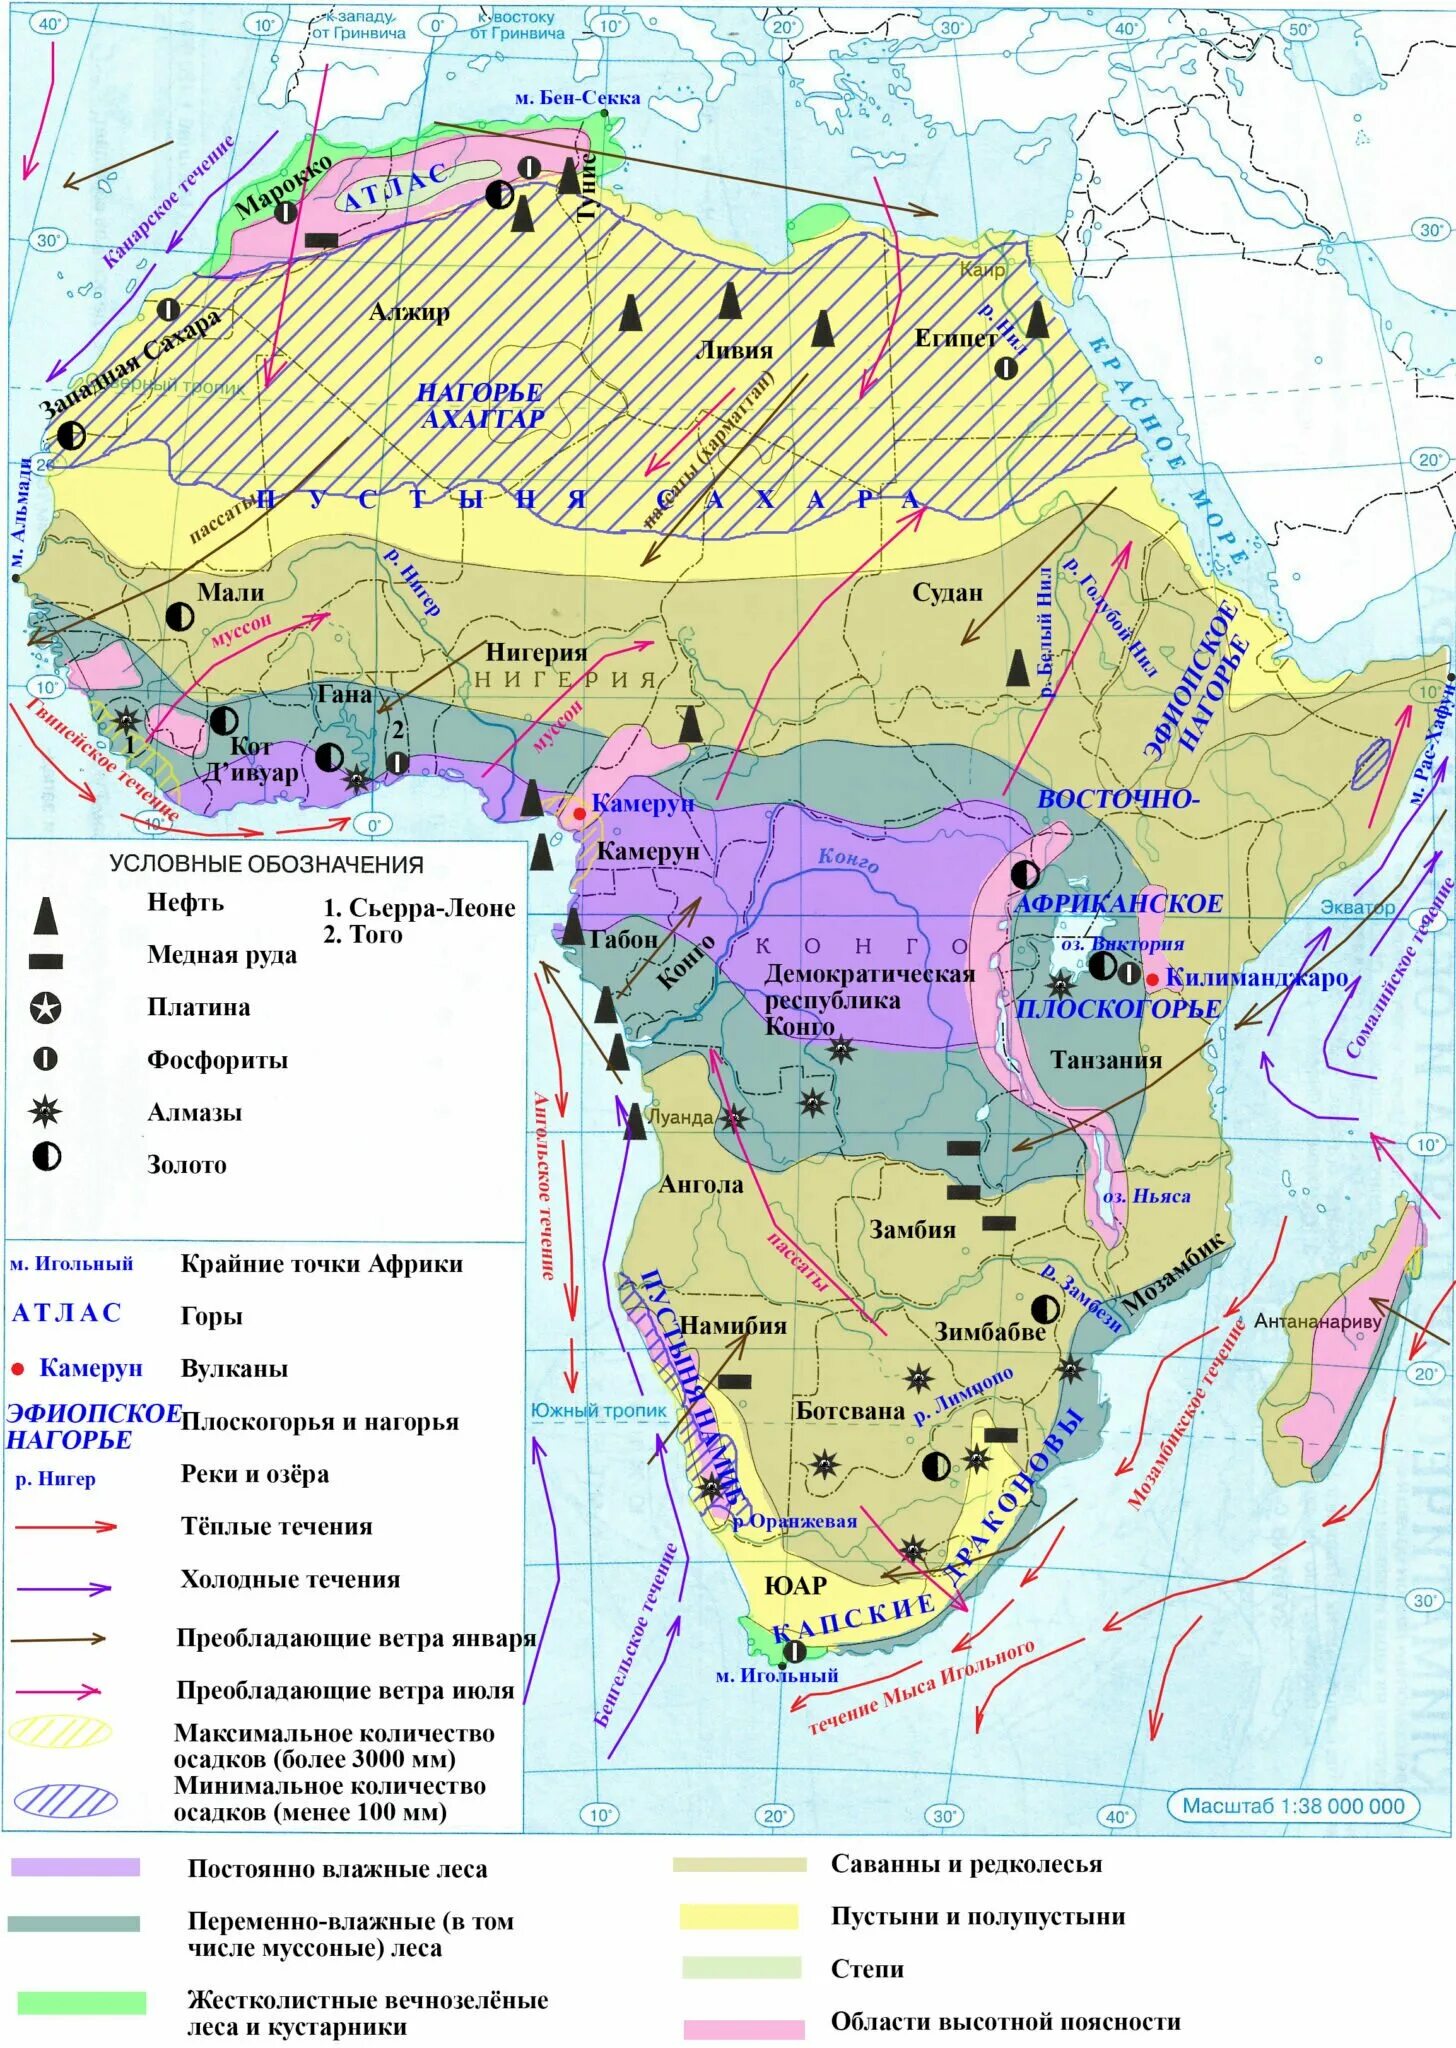 География 11 класс контурная карта Африка гдз. География 7 класс контурные карты гдз Африка. Гдз по географии 7 класс контурные карты Африка. Карта Африки атлас 11 класс.